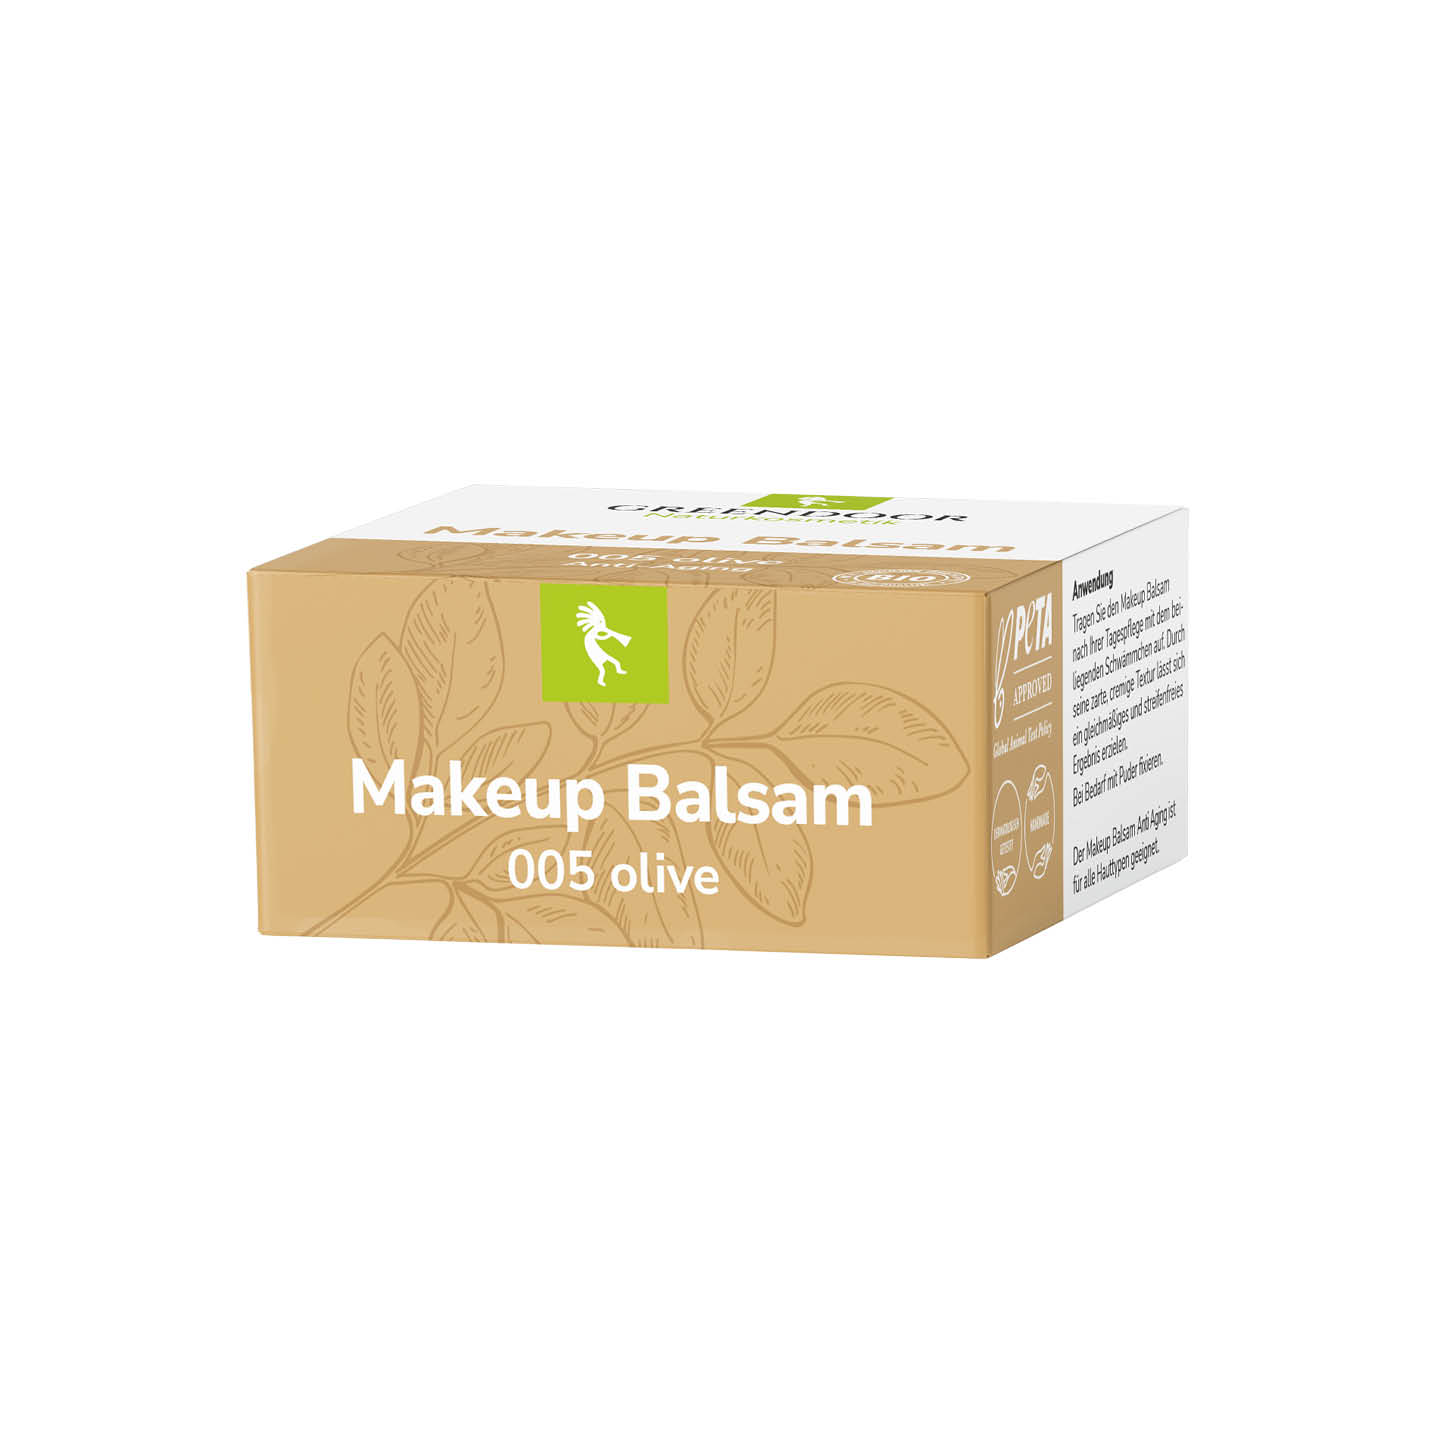 Make-up Balsam olive